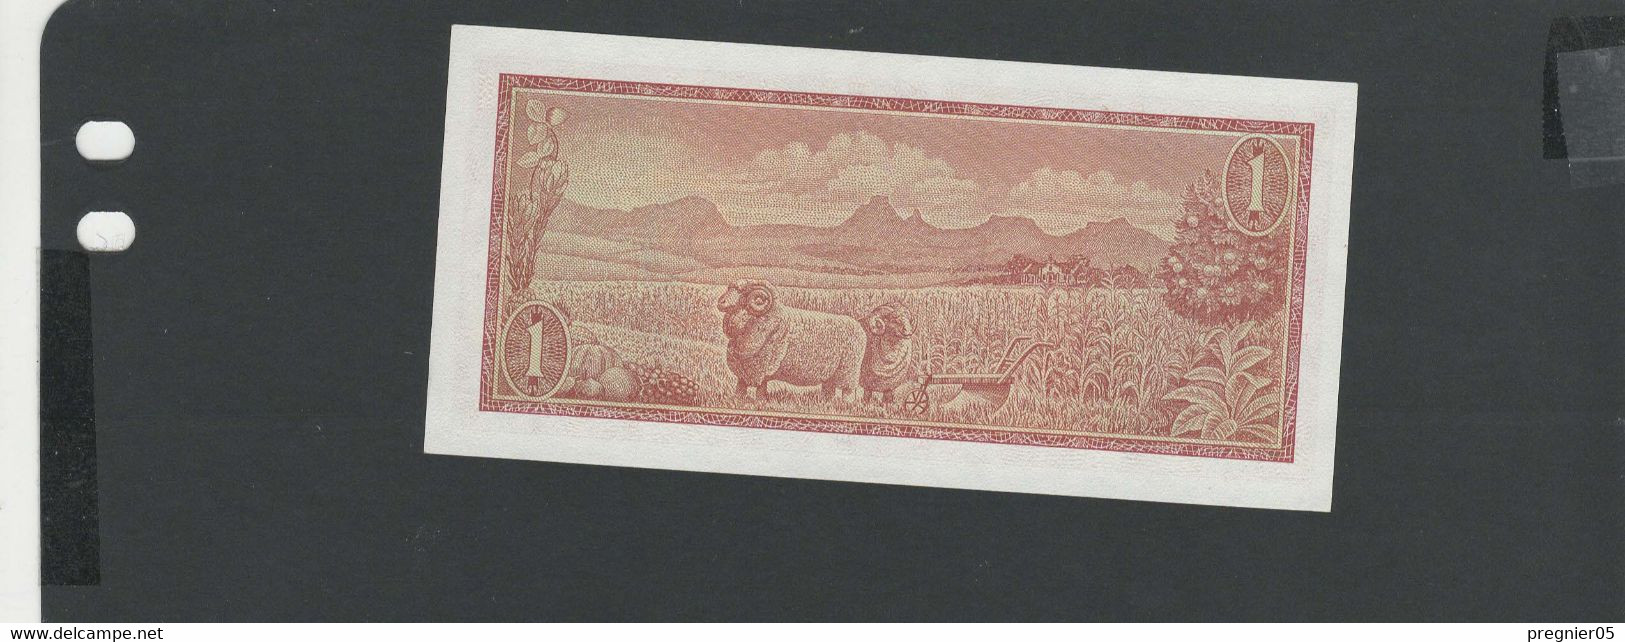 AFRIQUE Du SUD - Billet 1 Rand 1966/72 NEUF/UNC Pick-109 - Afrique Du Sud